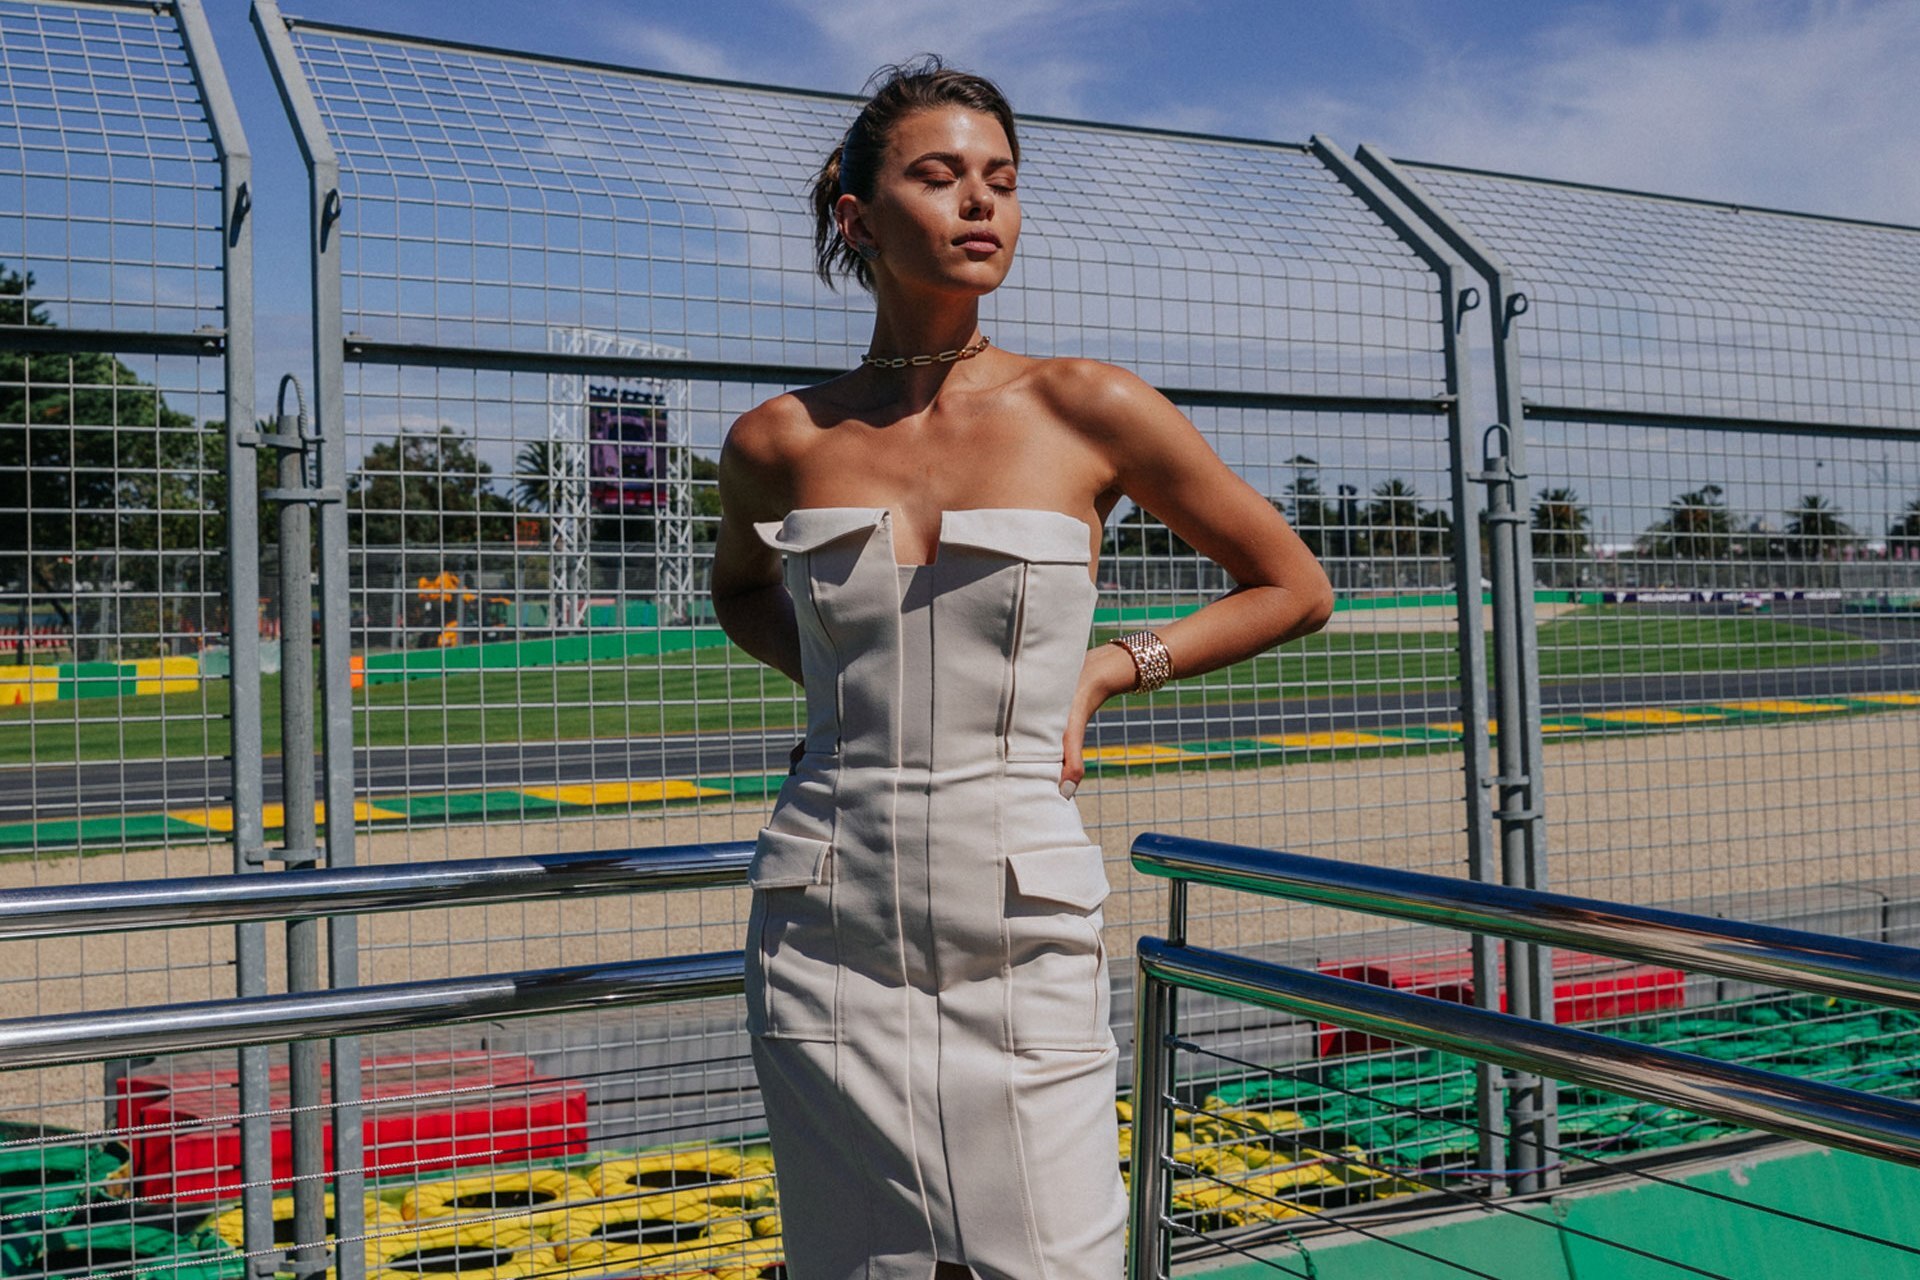 Mercedes Benz Ladies Day - Vogue Australia